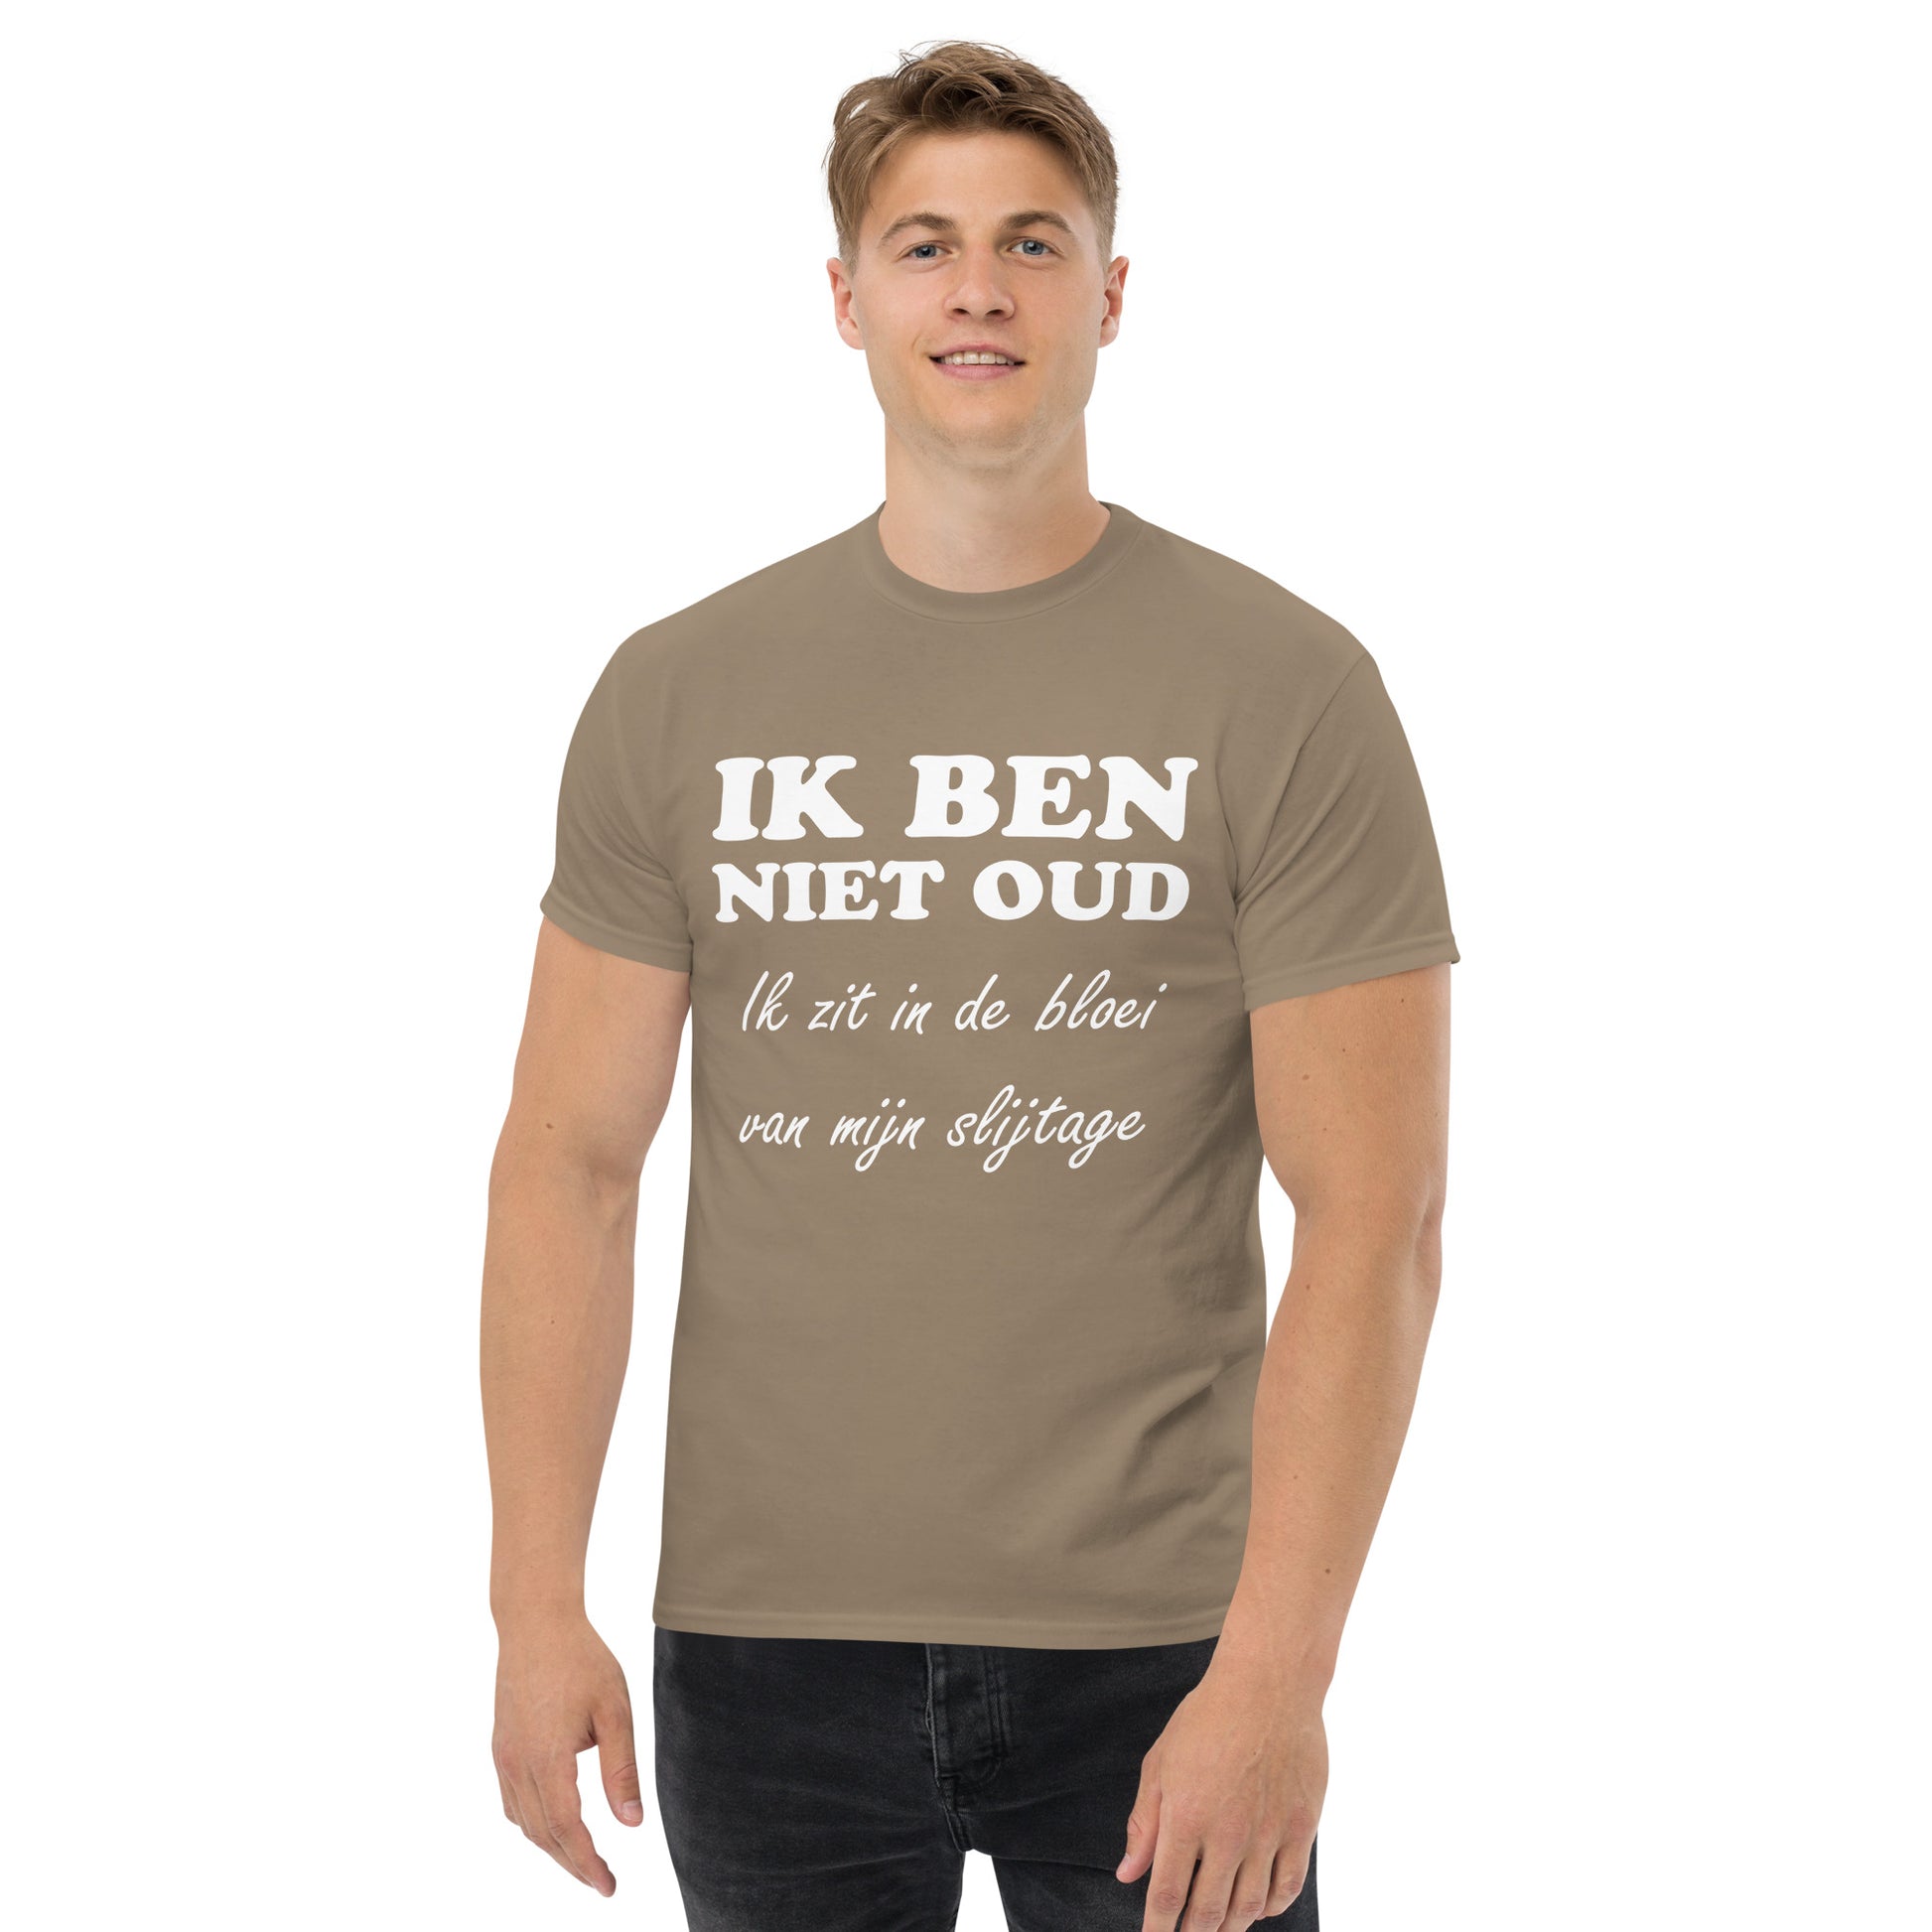 Men with Brown Savana T-shirt with the text in white "IK BEN NIET OUD ik zit in de bloei van mijn slijtage"